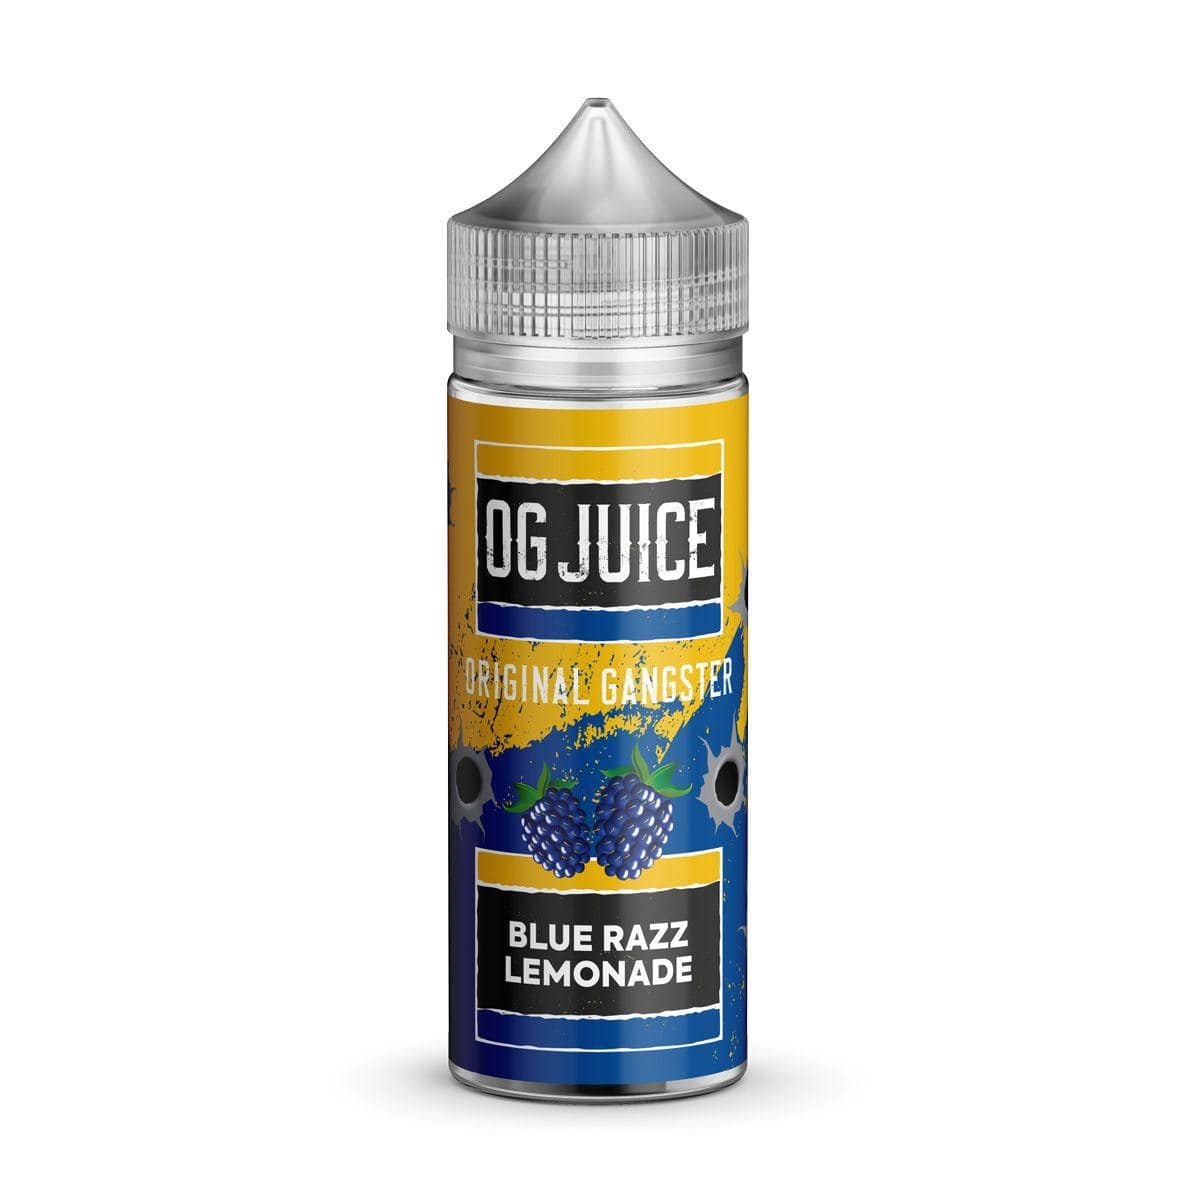 OG Juice - OG Juice Original Gangster 100ml E-liquid Shortfill - theno1plugshop